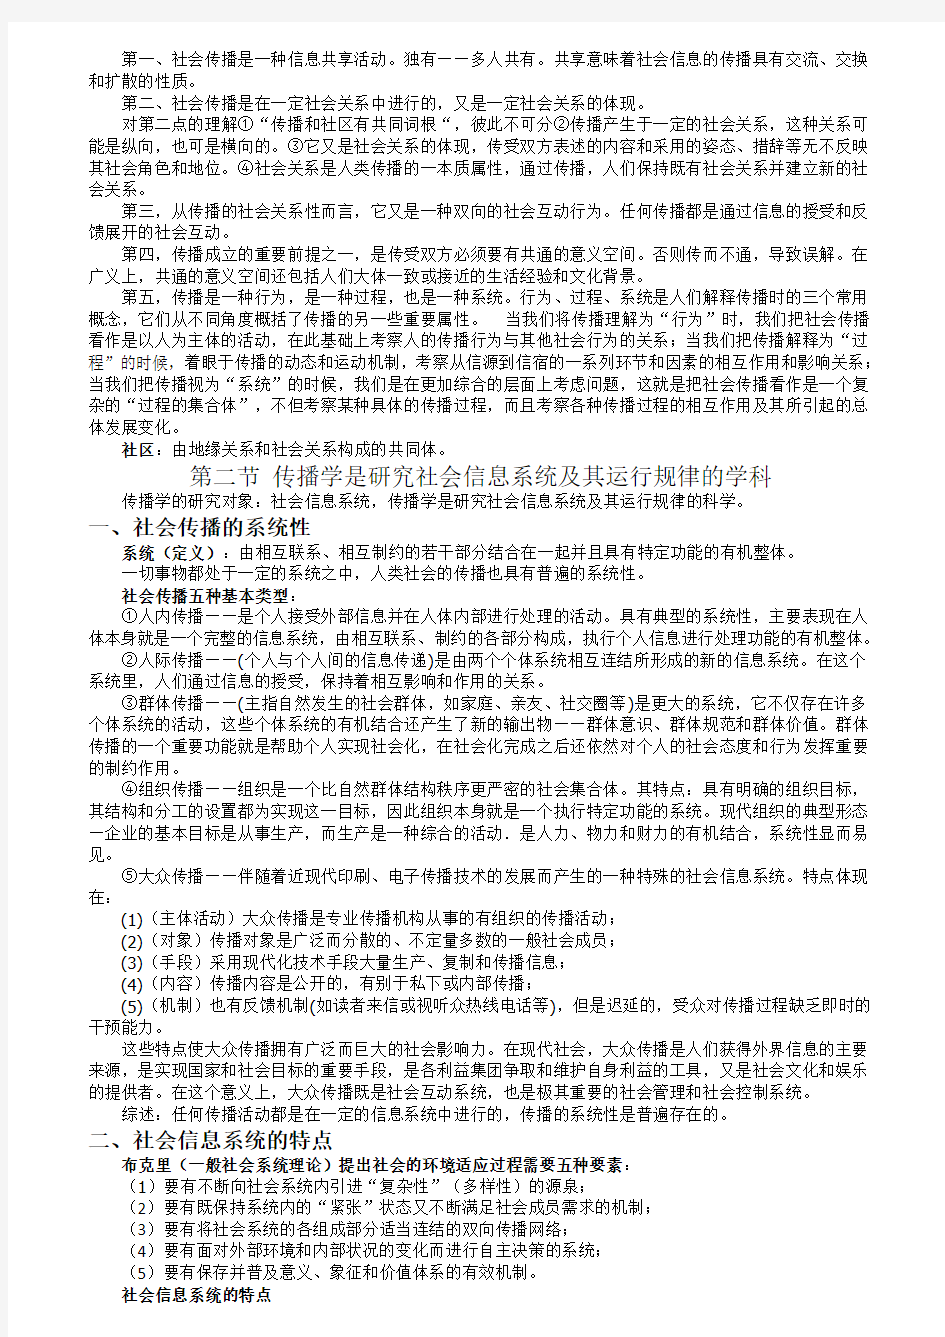 郭庆光《传播学教程》第二版超详细笔记(新闻与传播学考研必备)